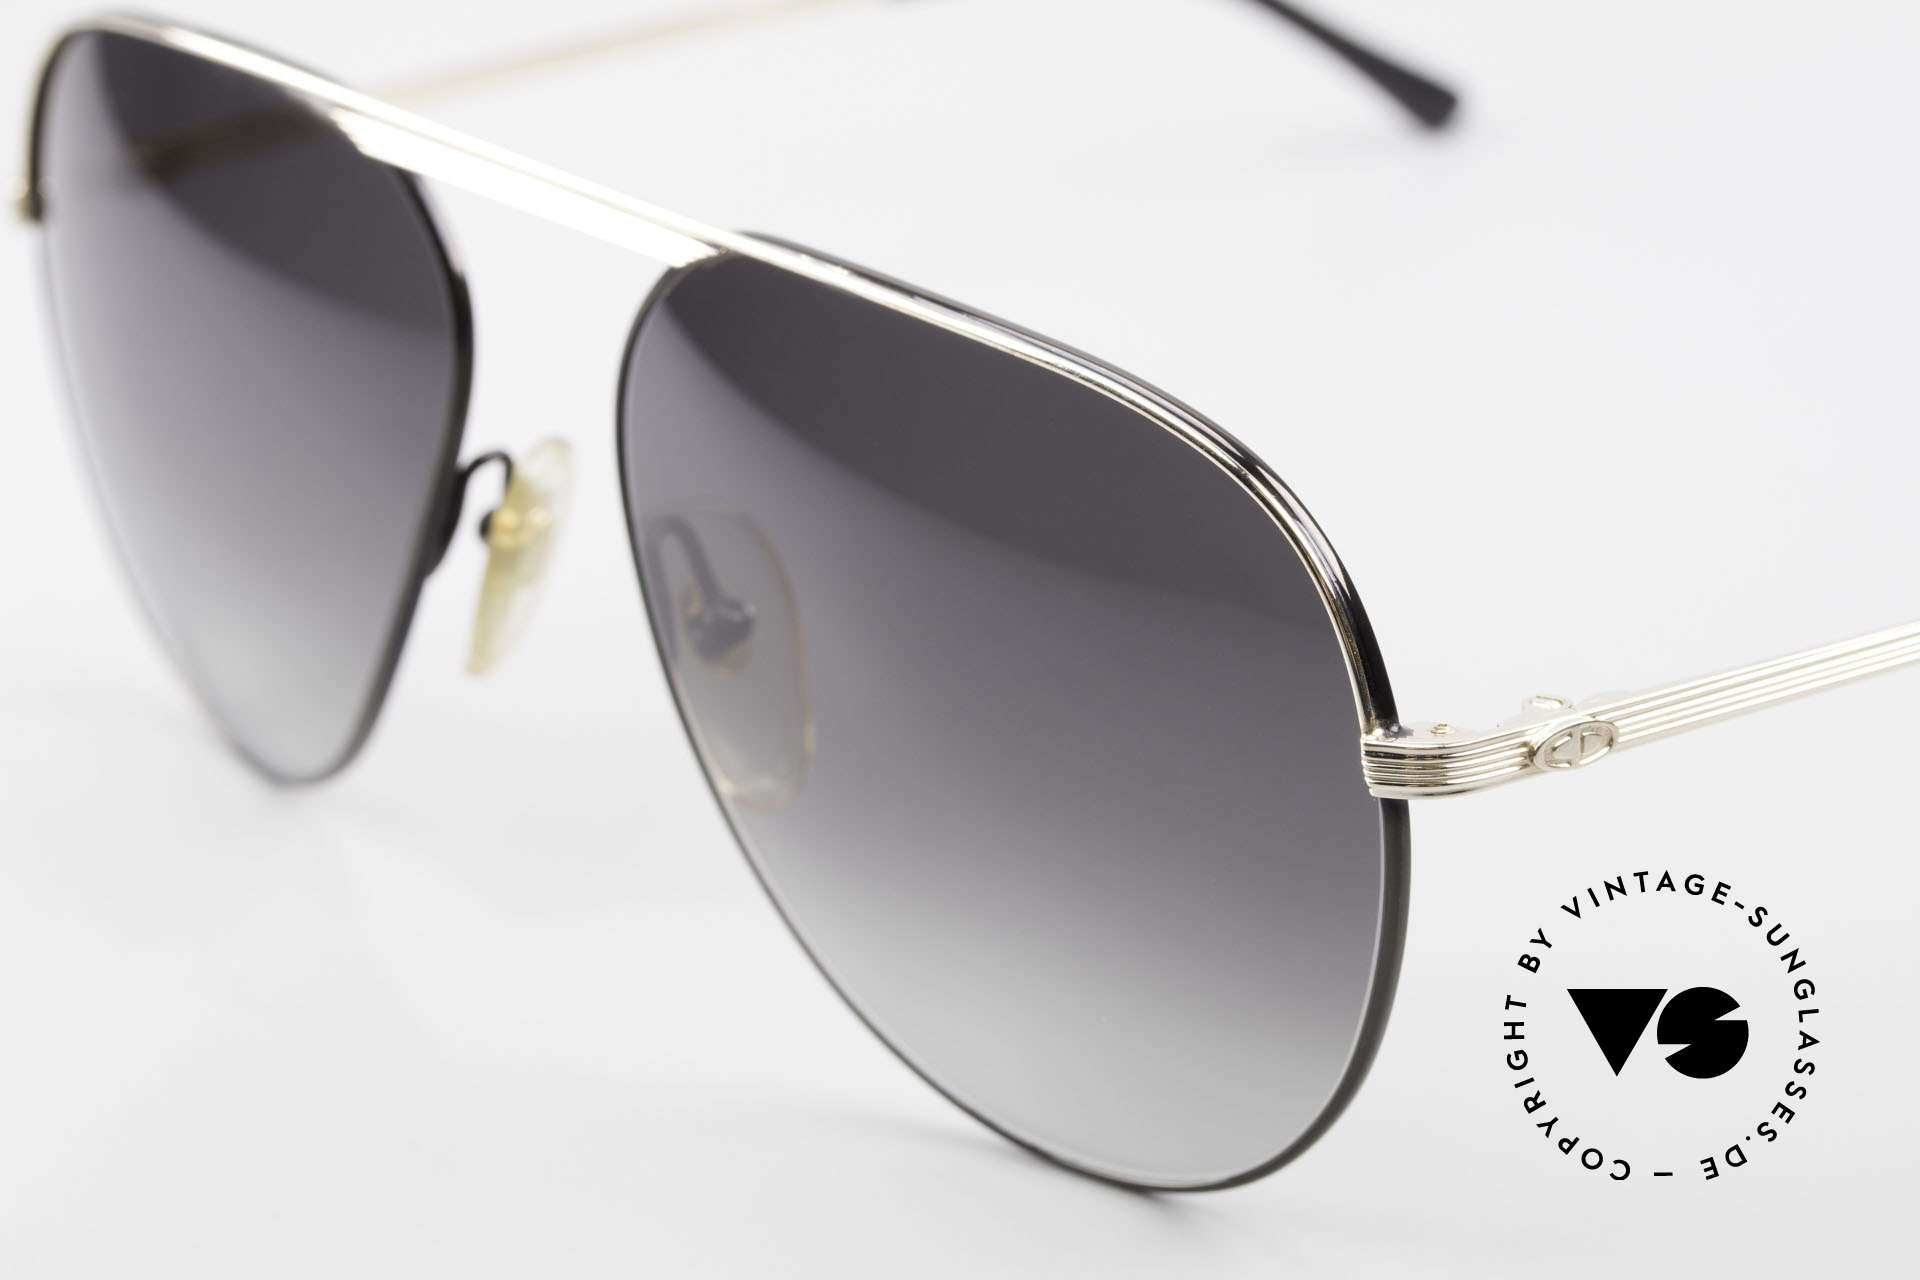 Christian Dior 2536 XXL 80er Vintage Sonnenbrille, edle Gläser in grau-Verlauf für 100% UV Schutz, Passend für Herren